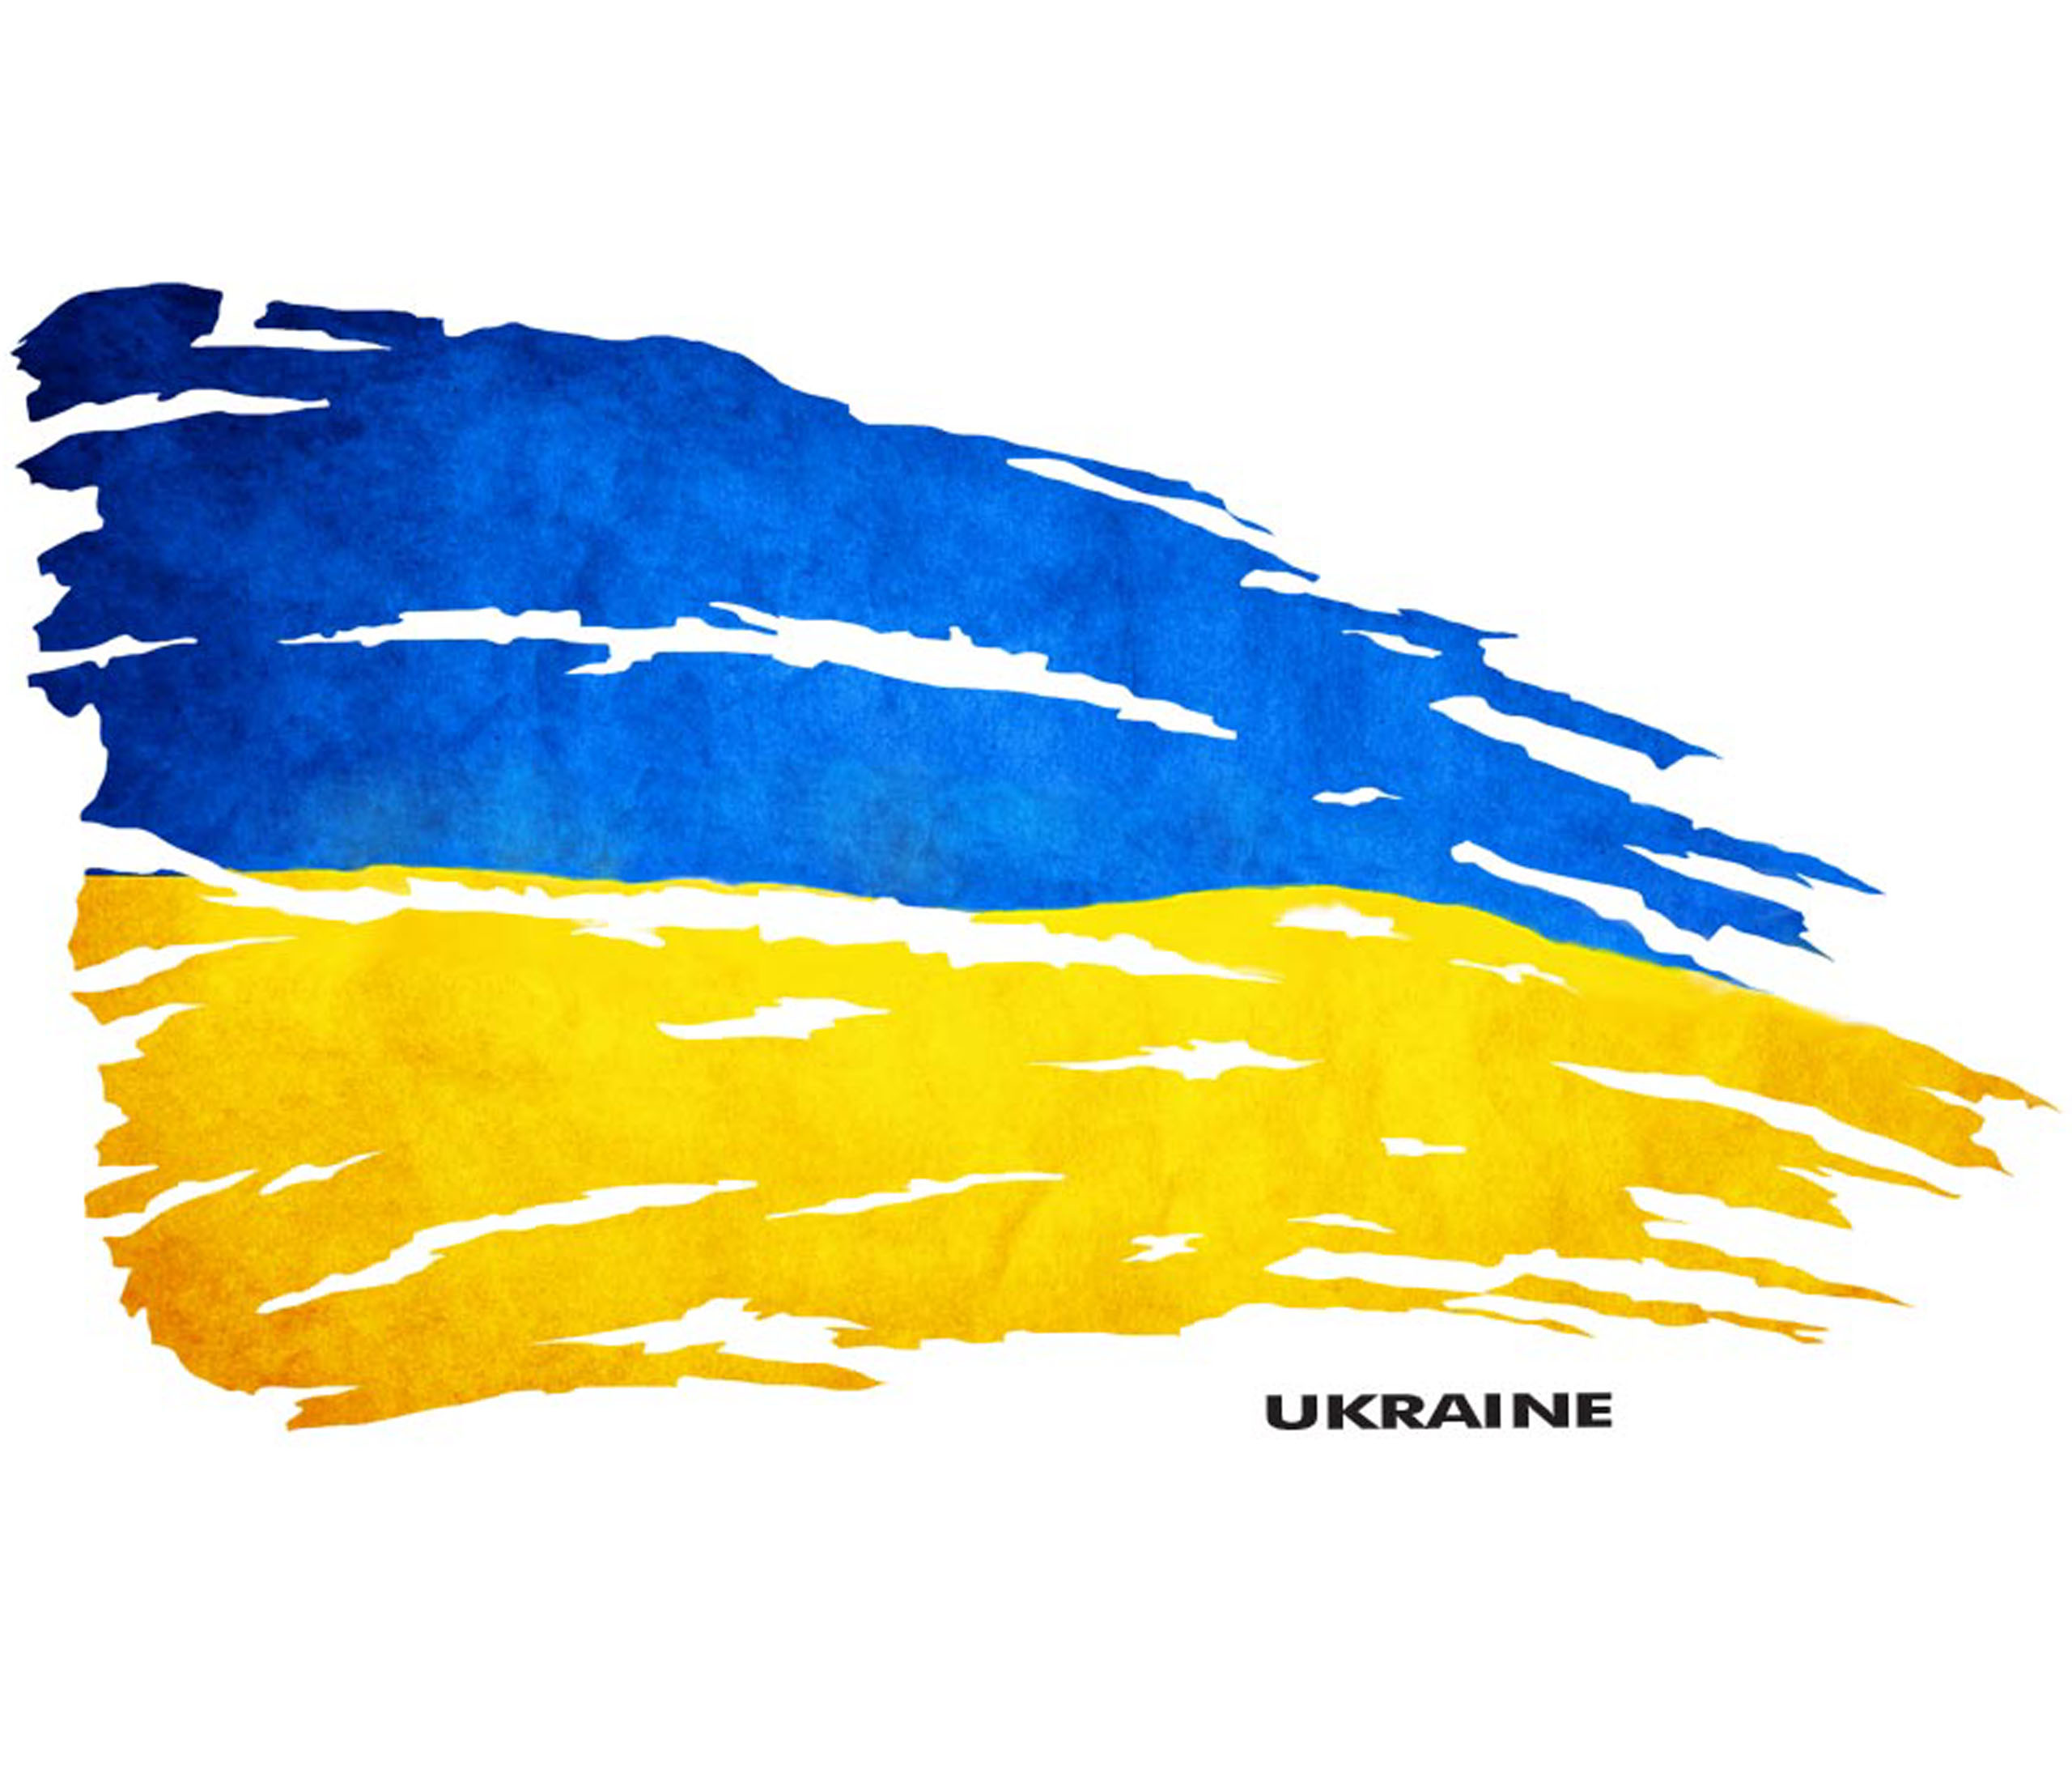 Wojna na Ukrainie - wypowiedź samorządu